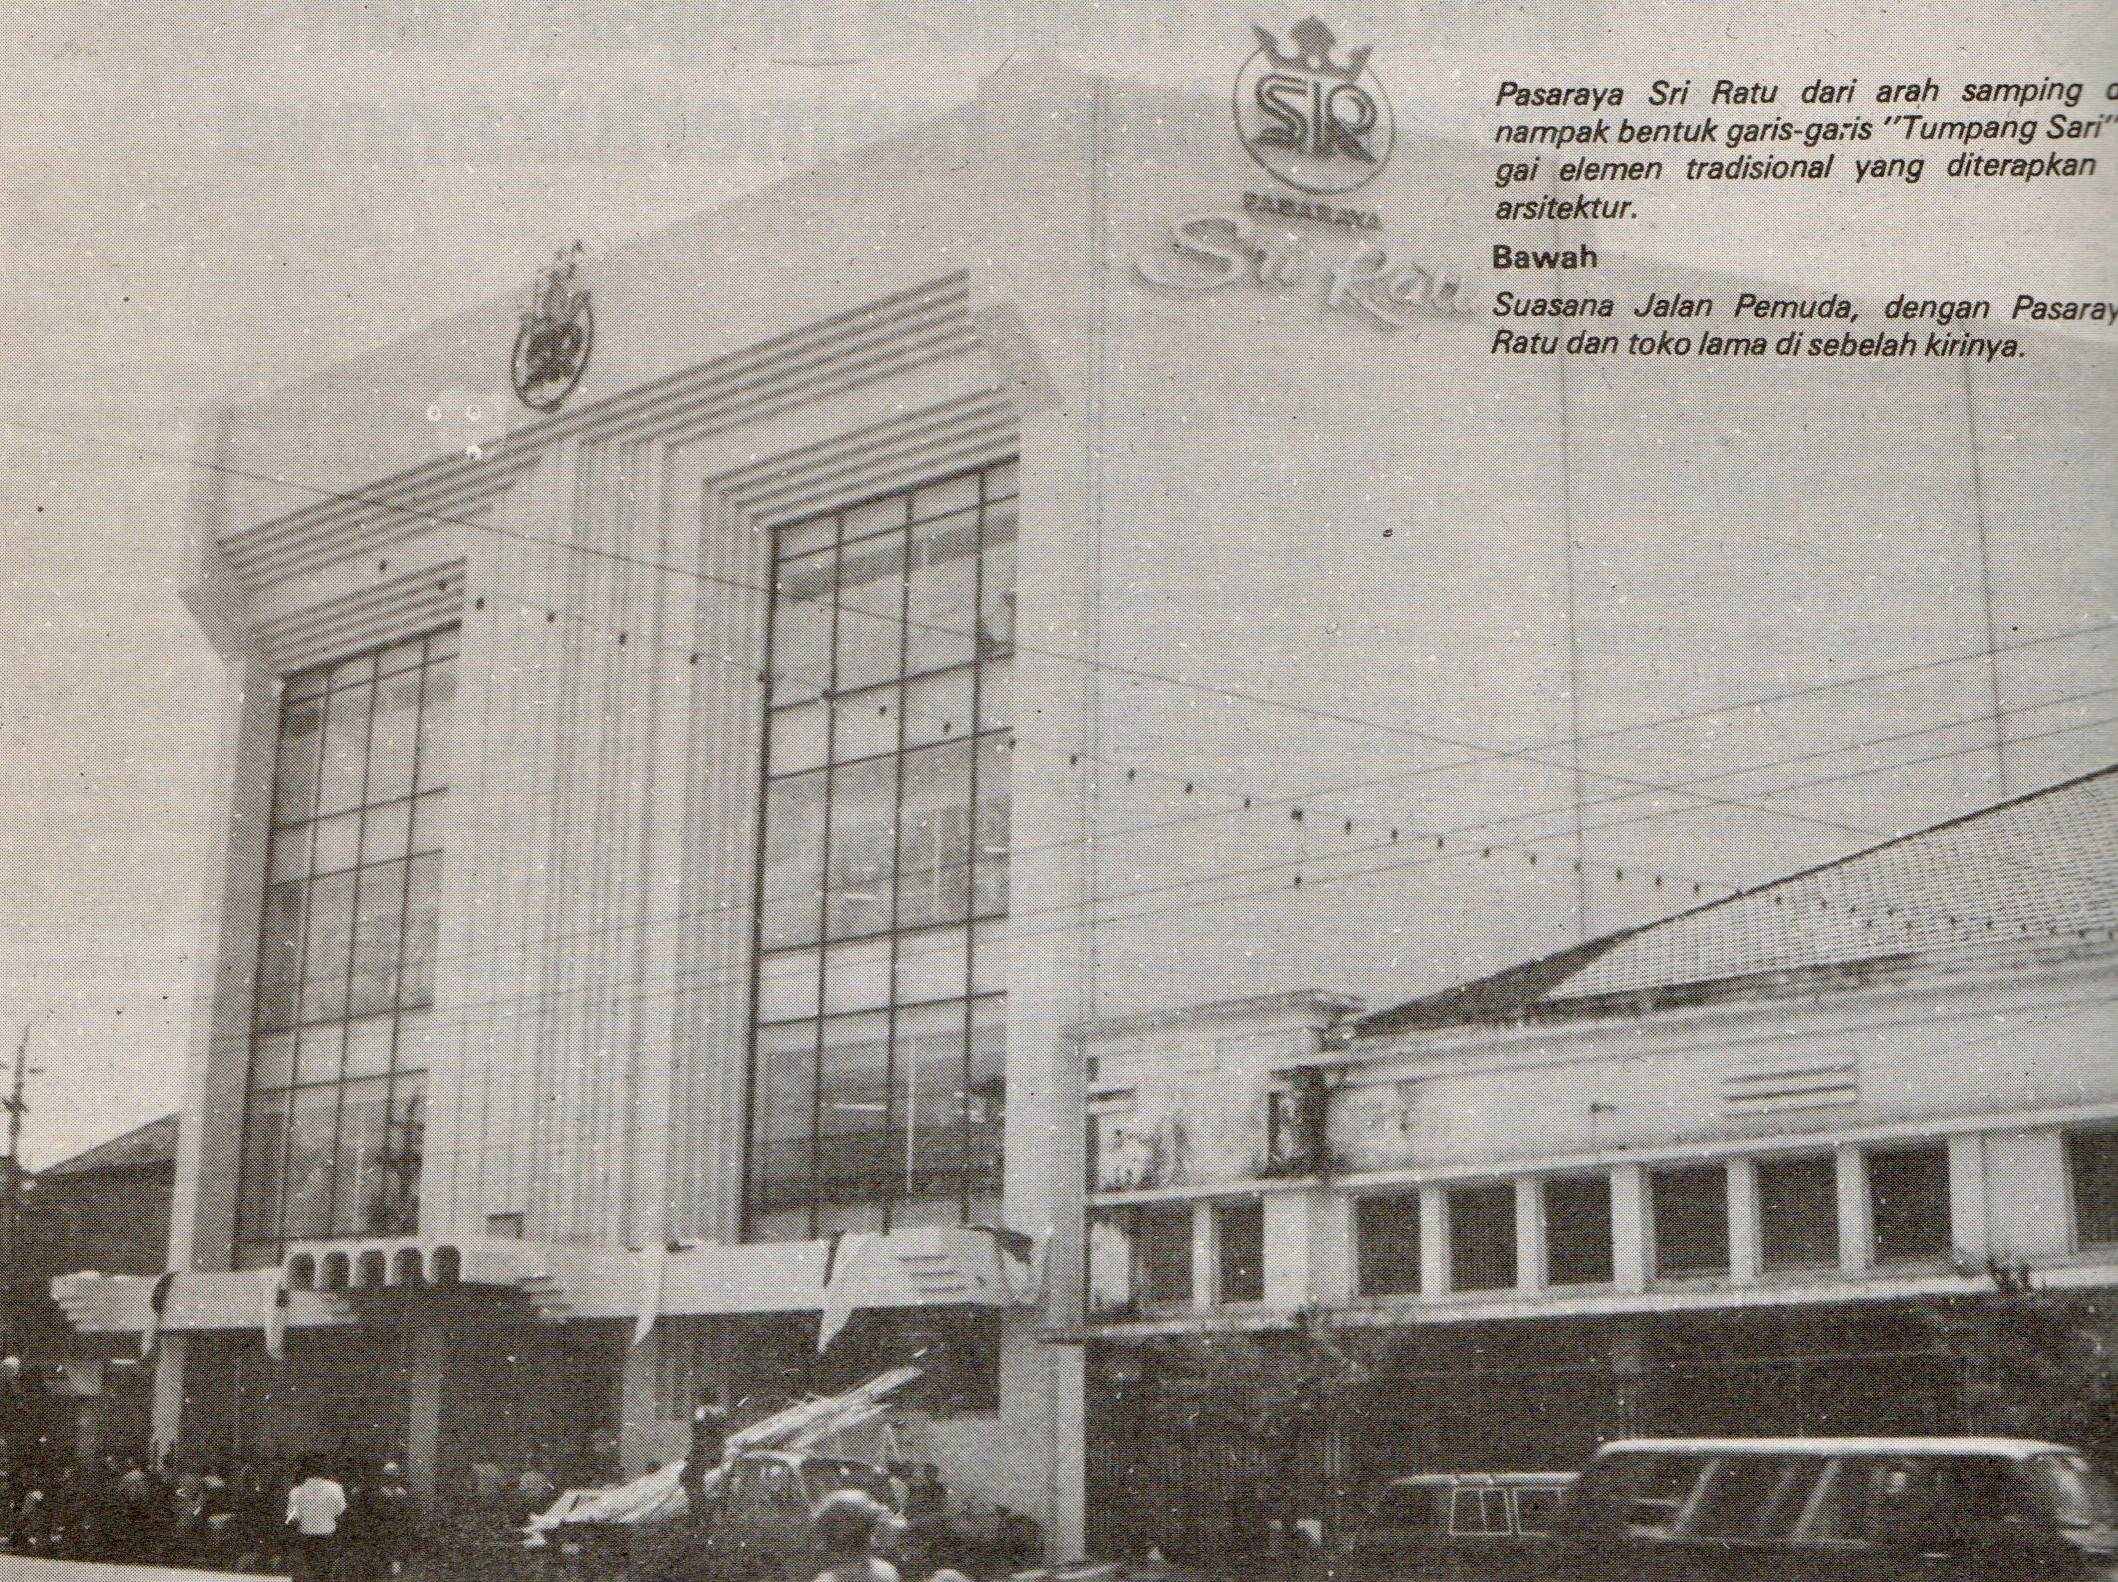 Pasaraya Sri Ratu, Semarang 1980an, 1986 tempo dulu